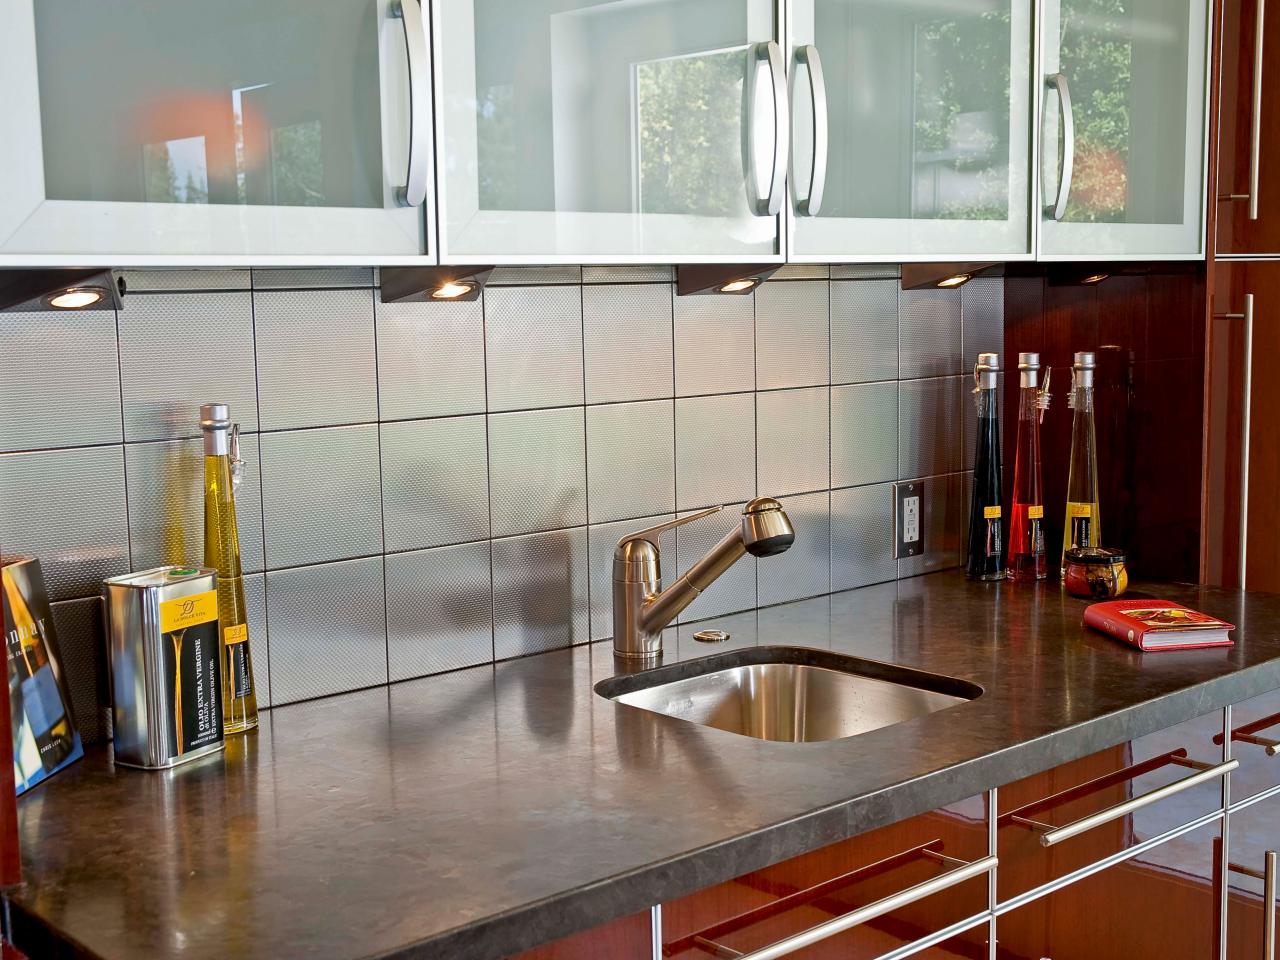 10-ways-to-remodel-your-kitchen-under-20008